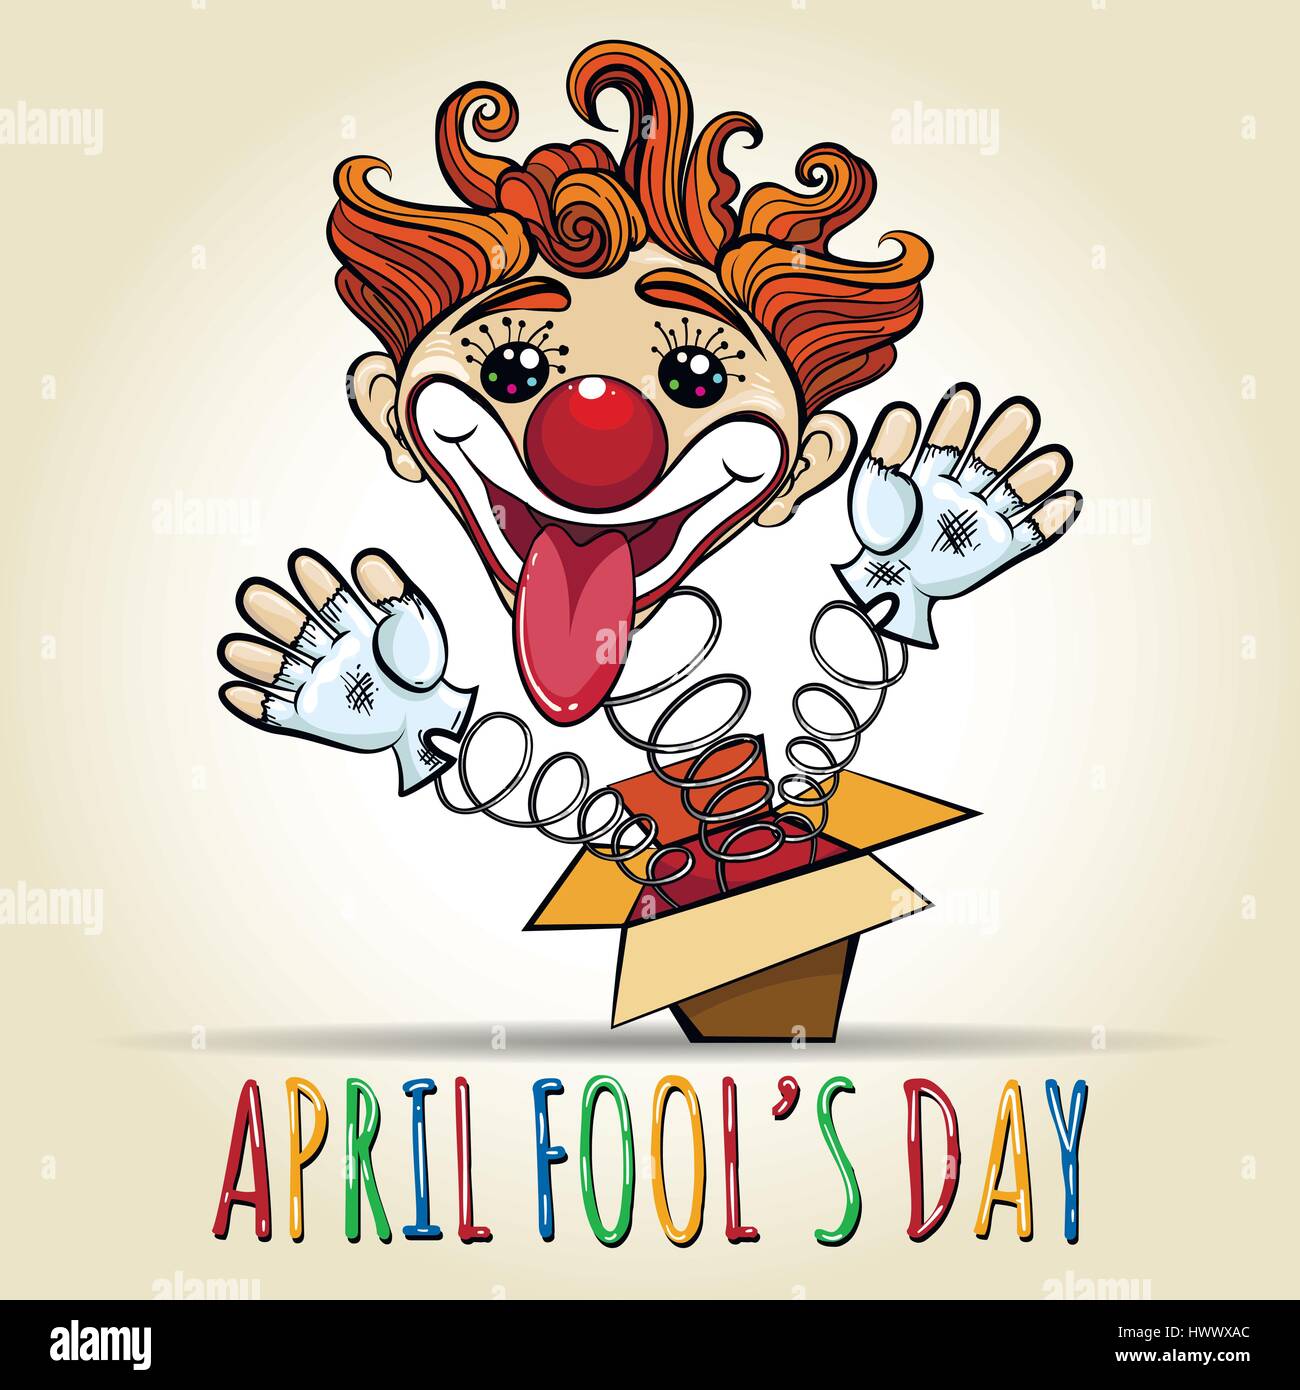 Glücklich April Dummkopfs Tages Illustration. Spielzeug-Clown sprang aus einer Box. Vektor-Illustration im Cartoon-Stil. Stock Vektor